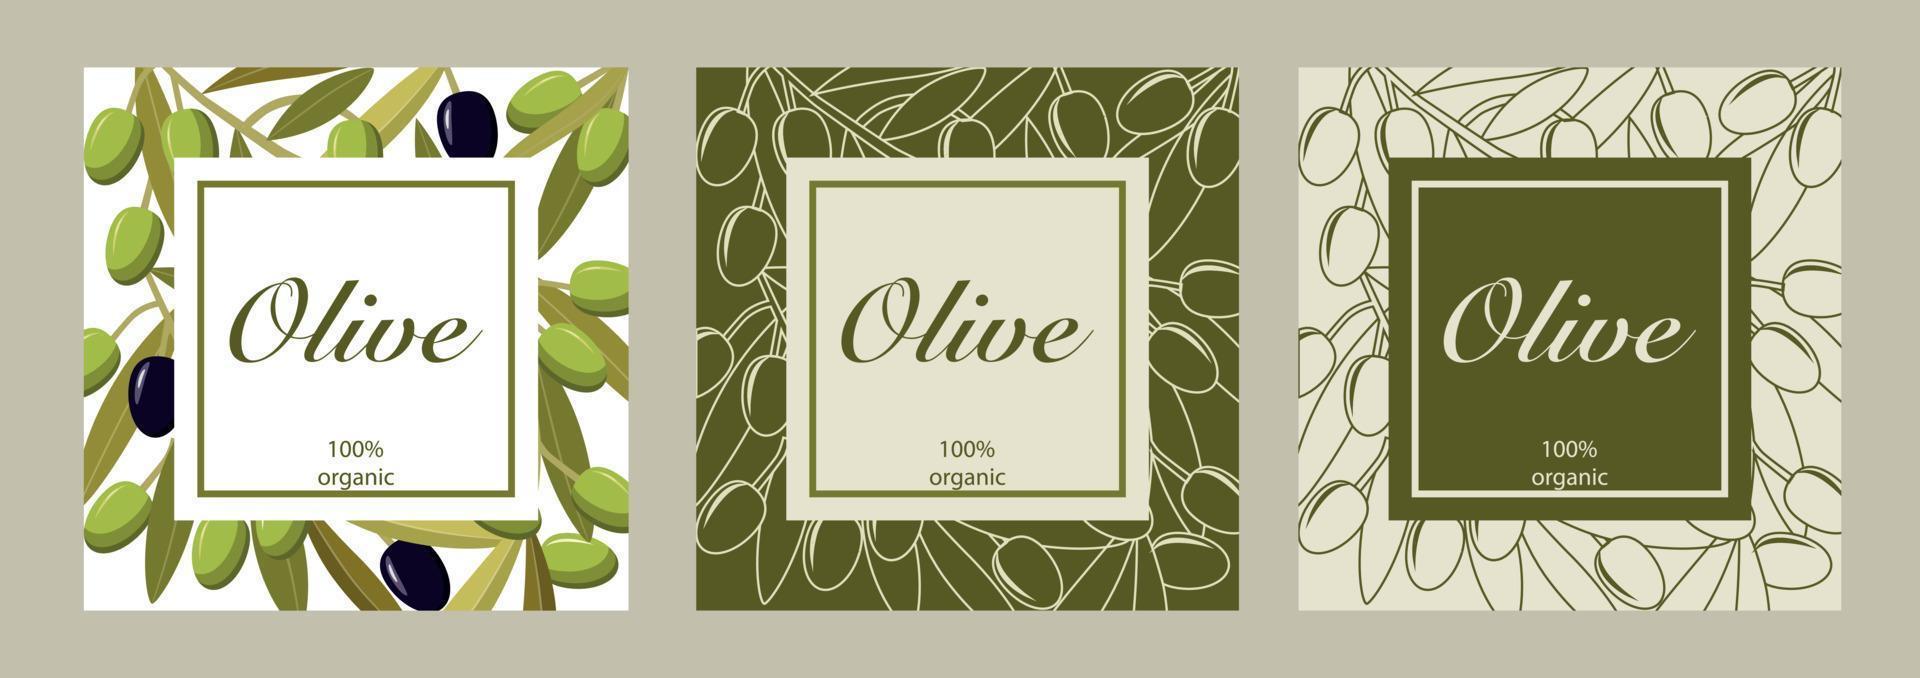 vektor samling av tre kort med svart och grön oliver. design för oliv olja, oliv förpackning, naturlig kosmetika, sjukvård Produkter